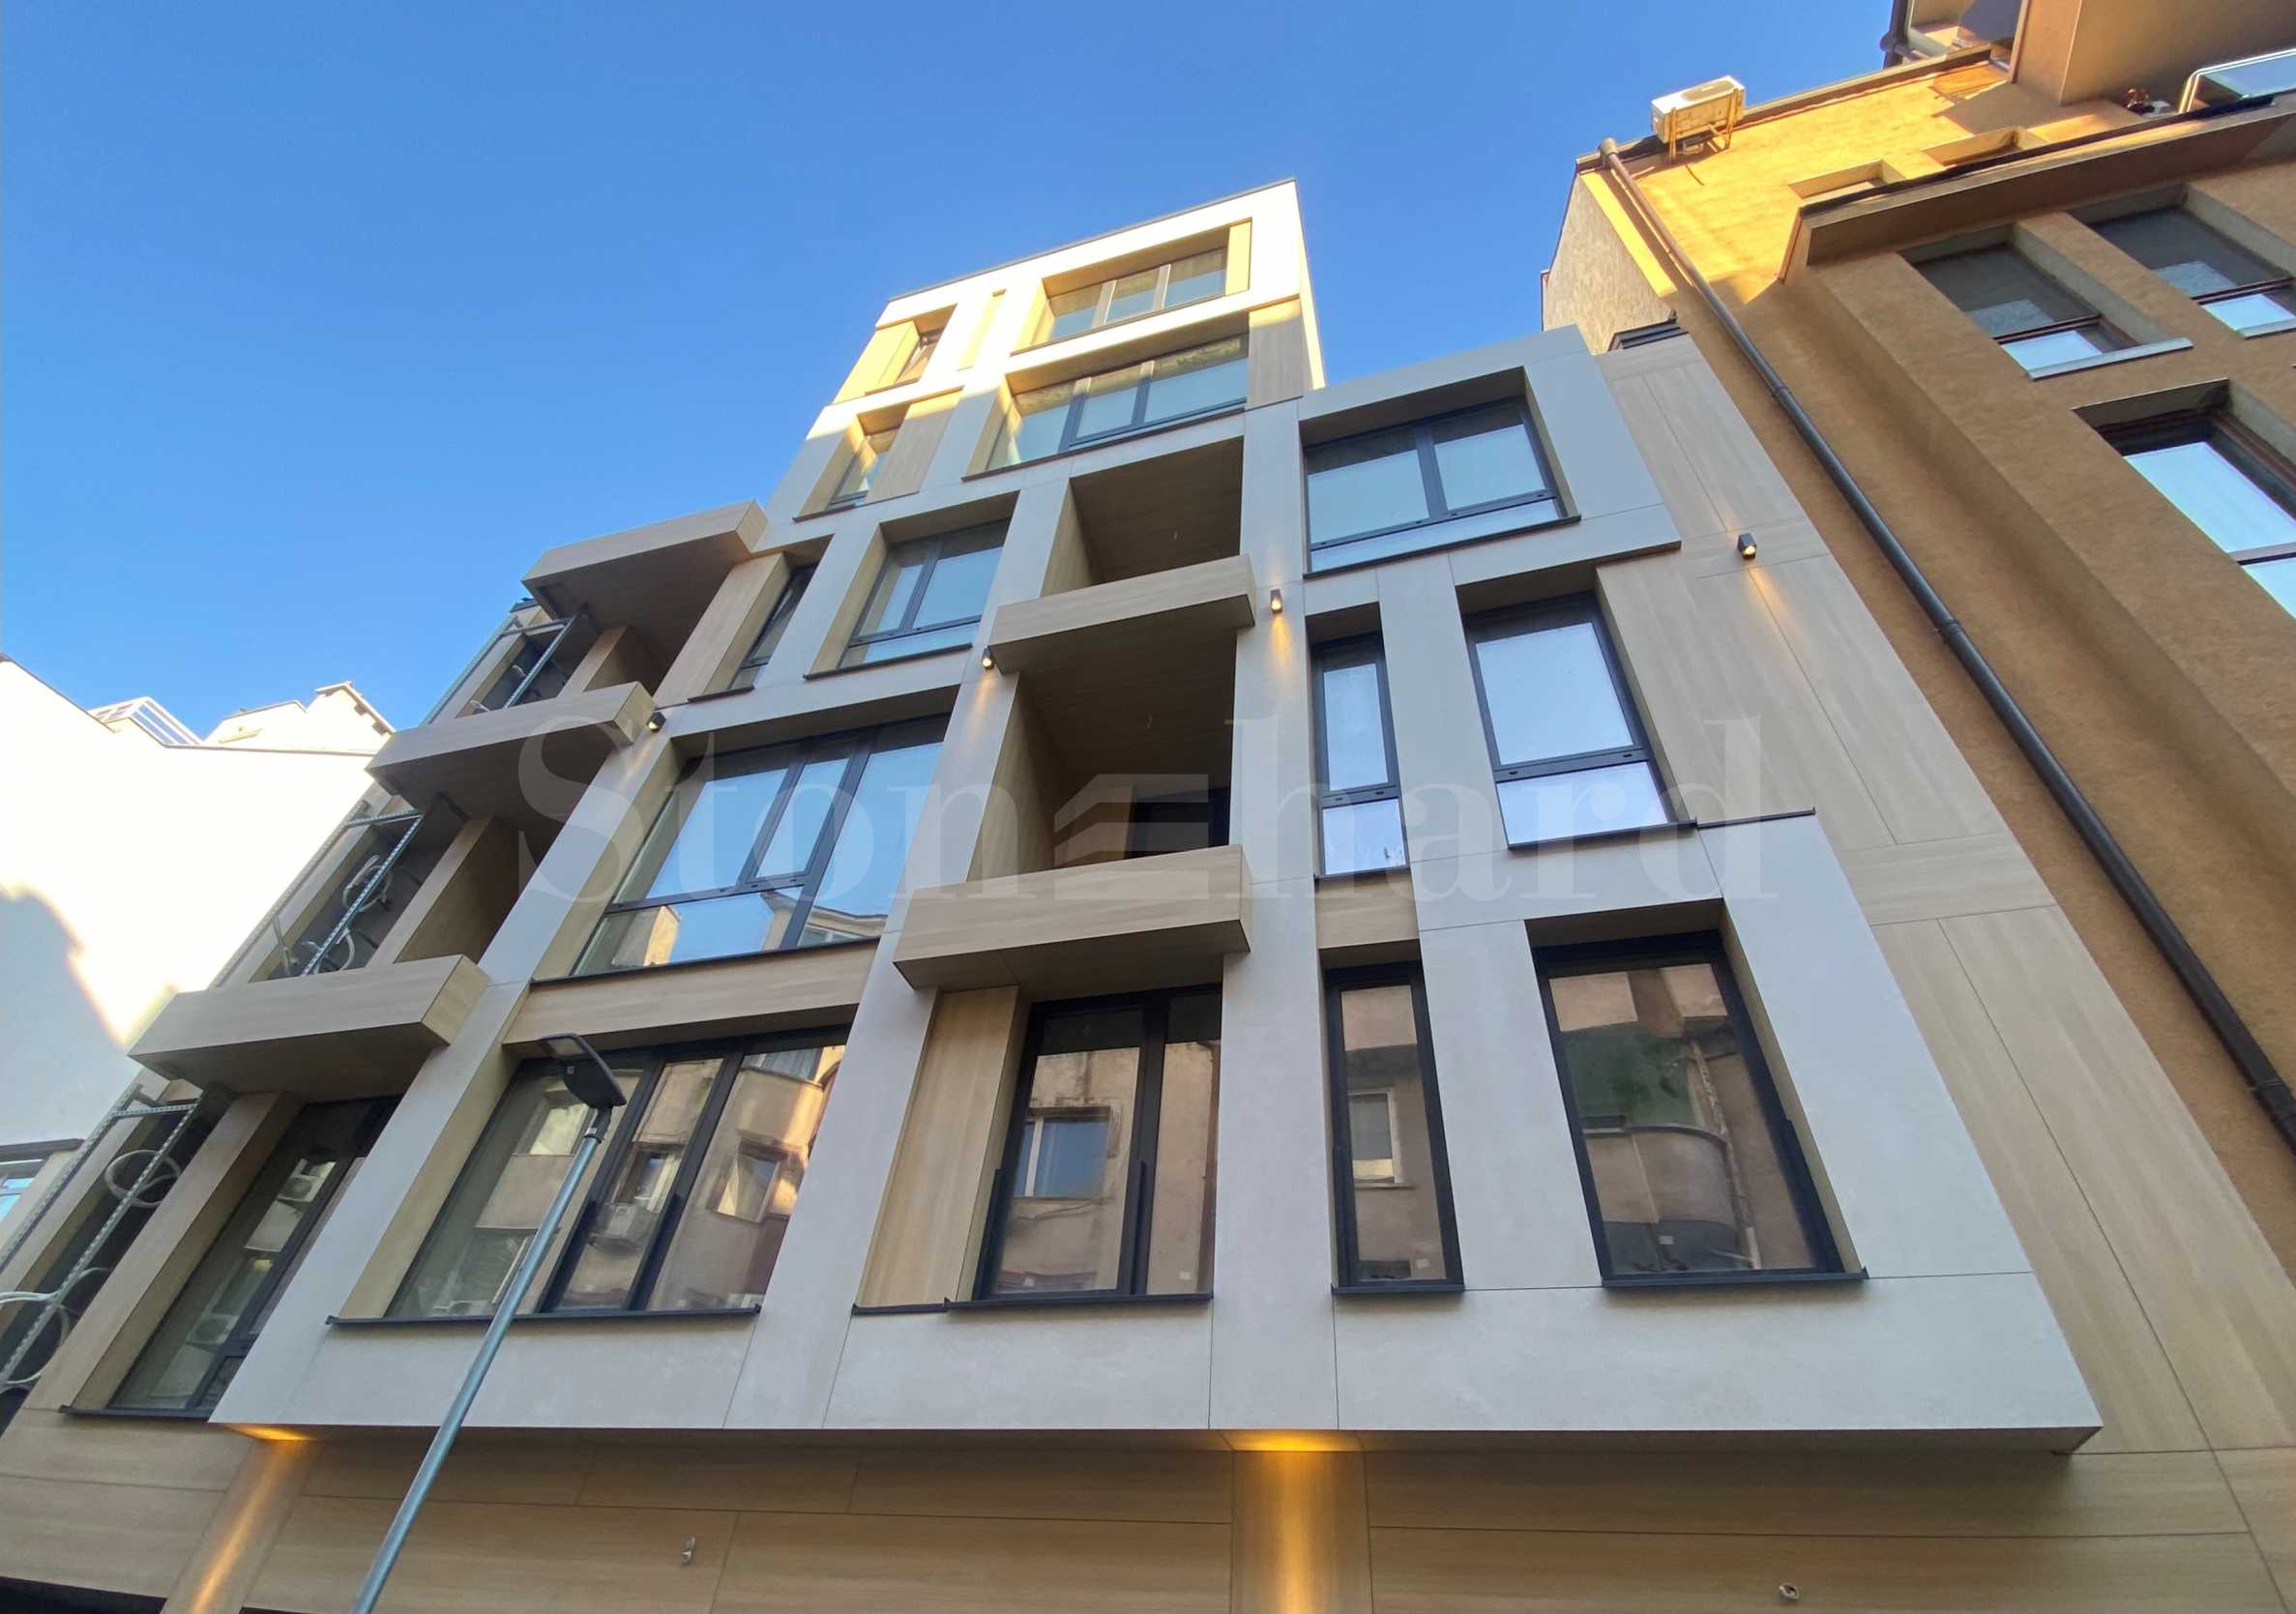 Апартаменти ново строителство в малка бутикова сграда до Grand Hotel Plovdiv  1 - Stonehard